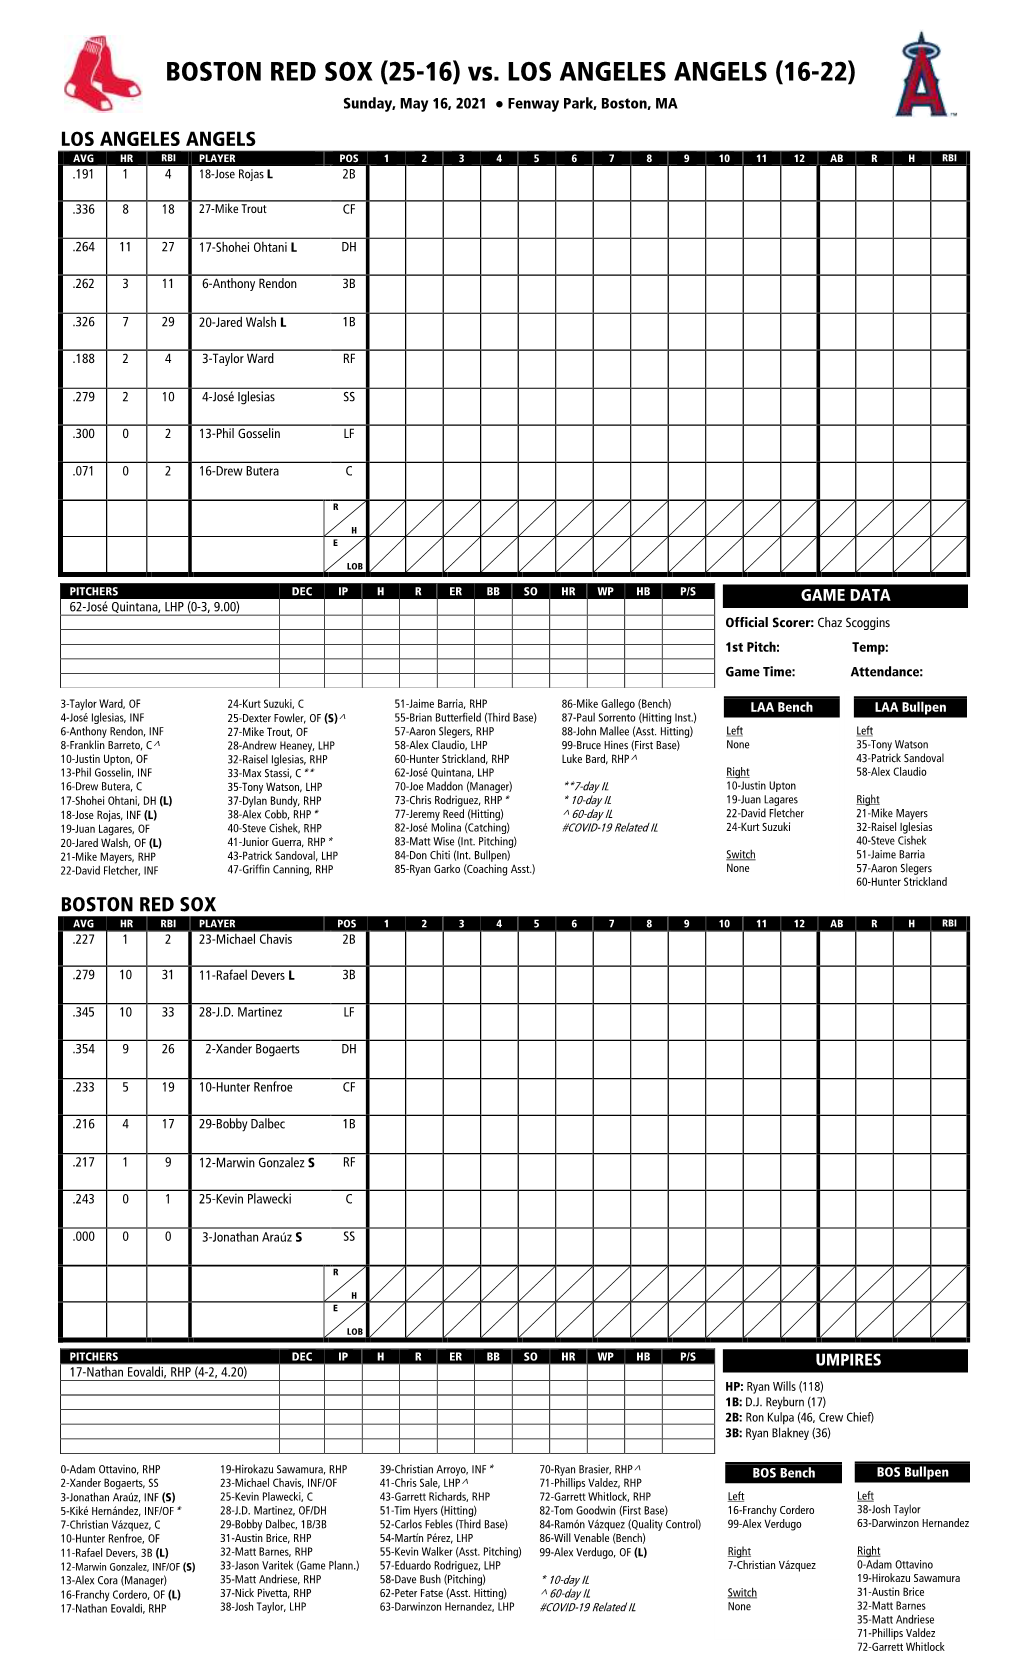 Lineup Sheet